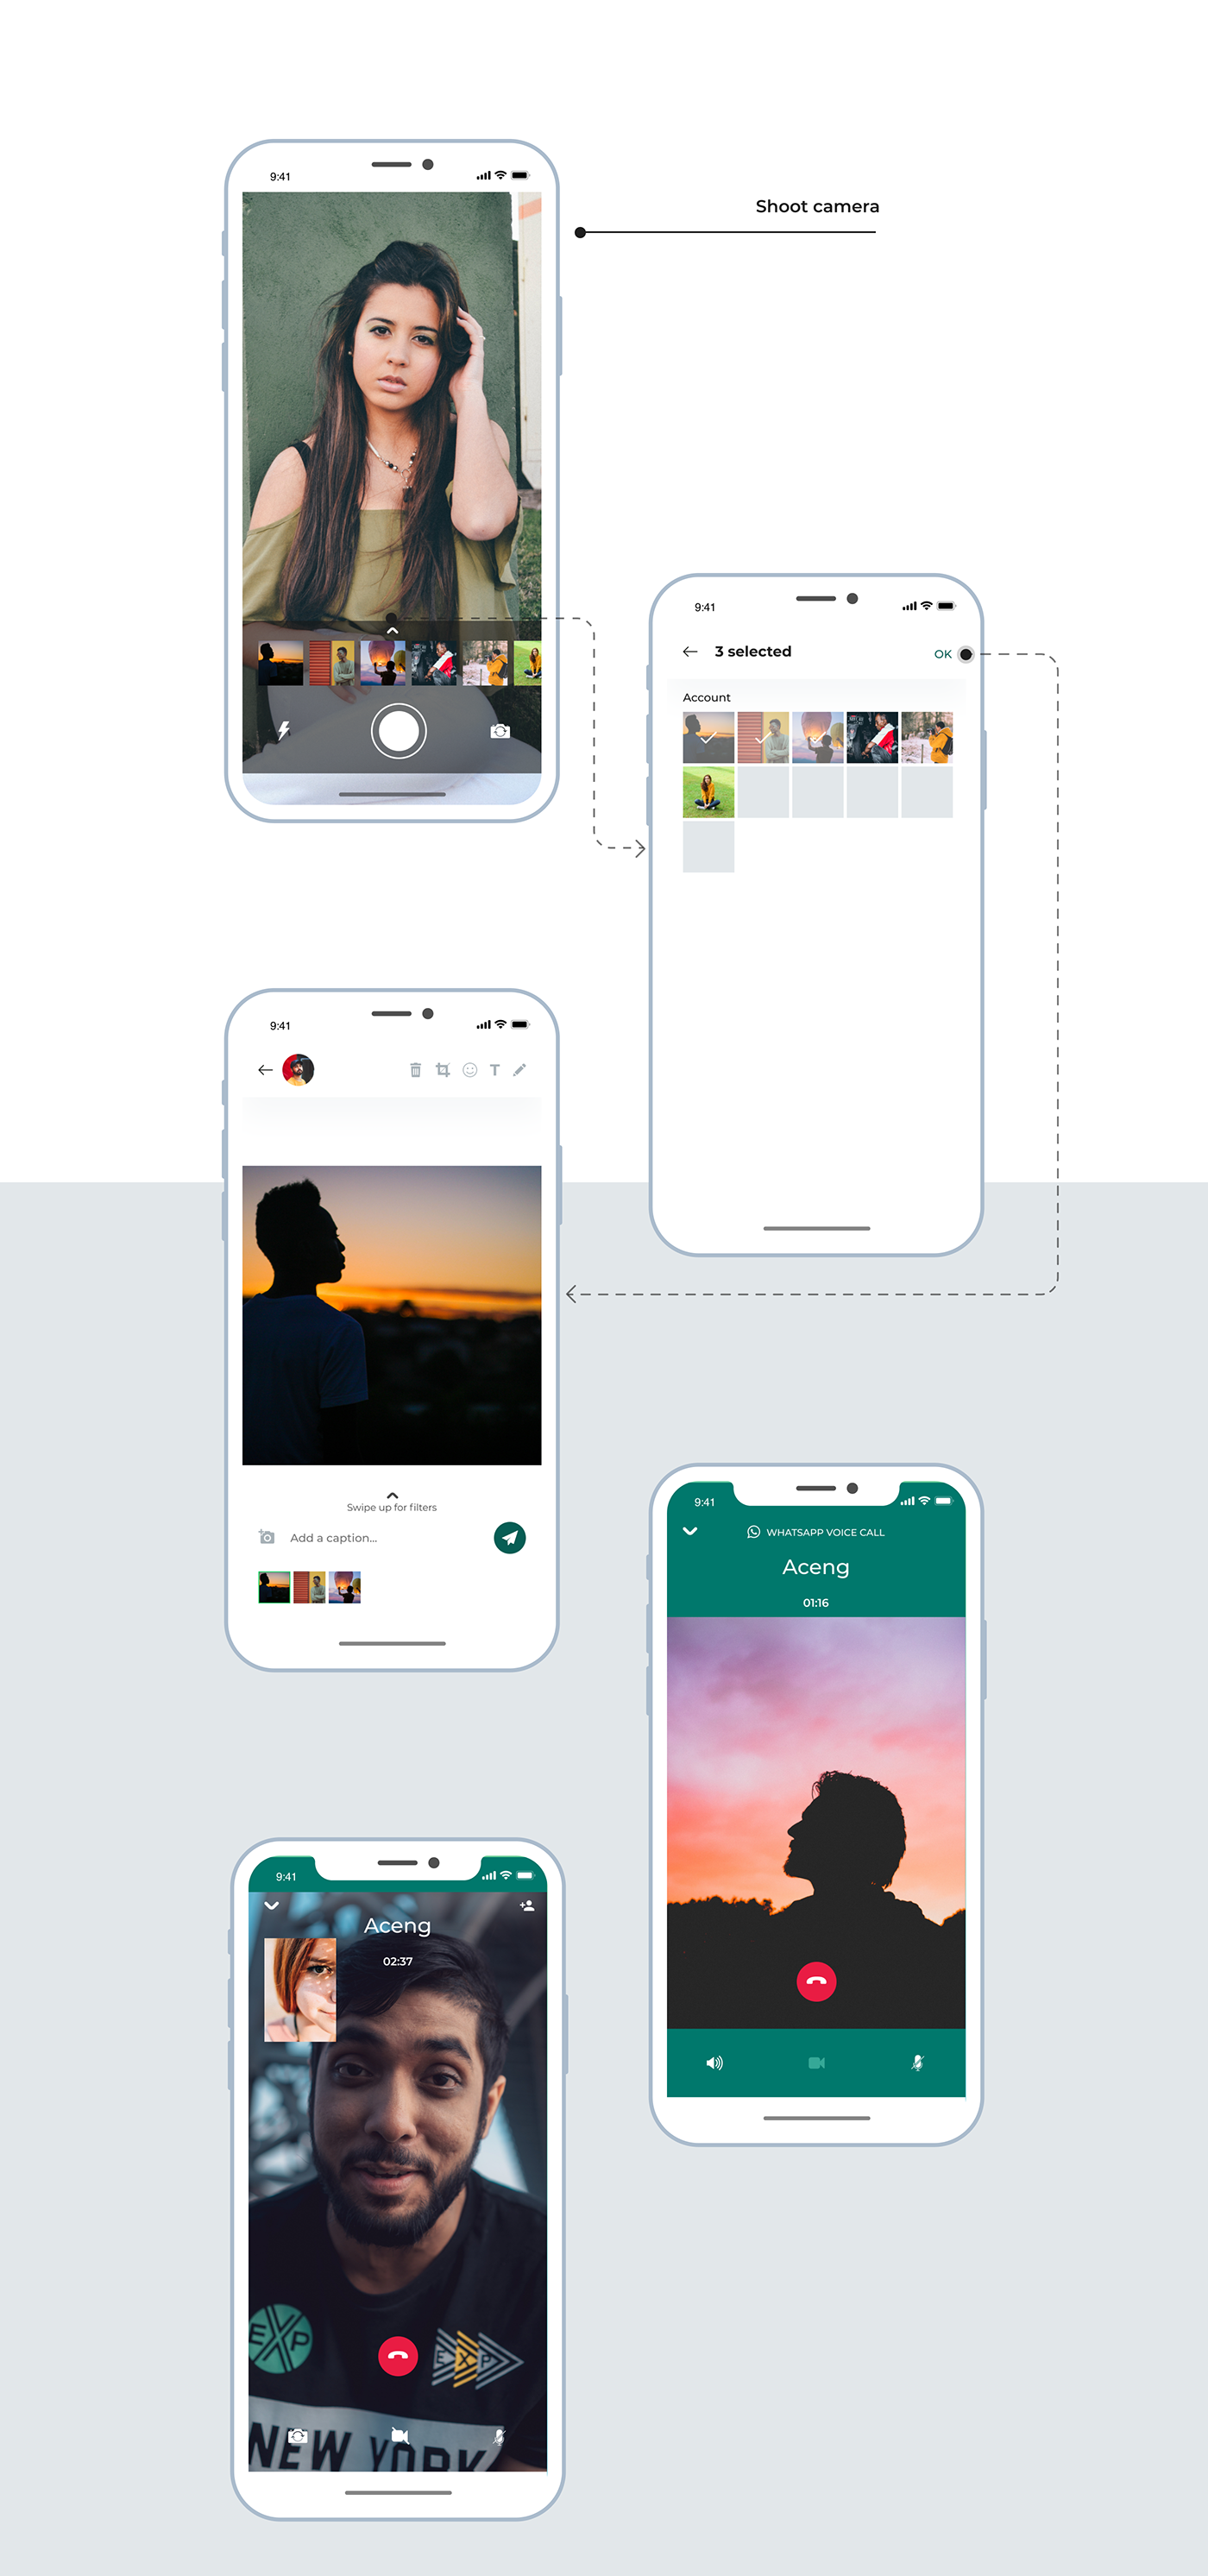 WhatsApp whatsappredesign uidesign uxdesign redesign uiuxdesign UserInterfaceDesign userexperiencedesign